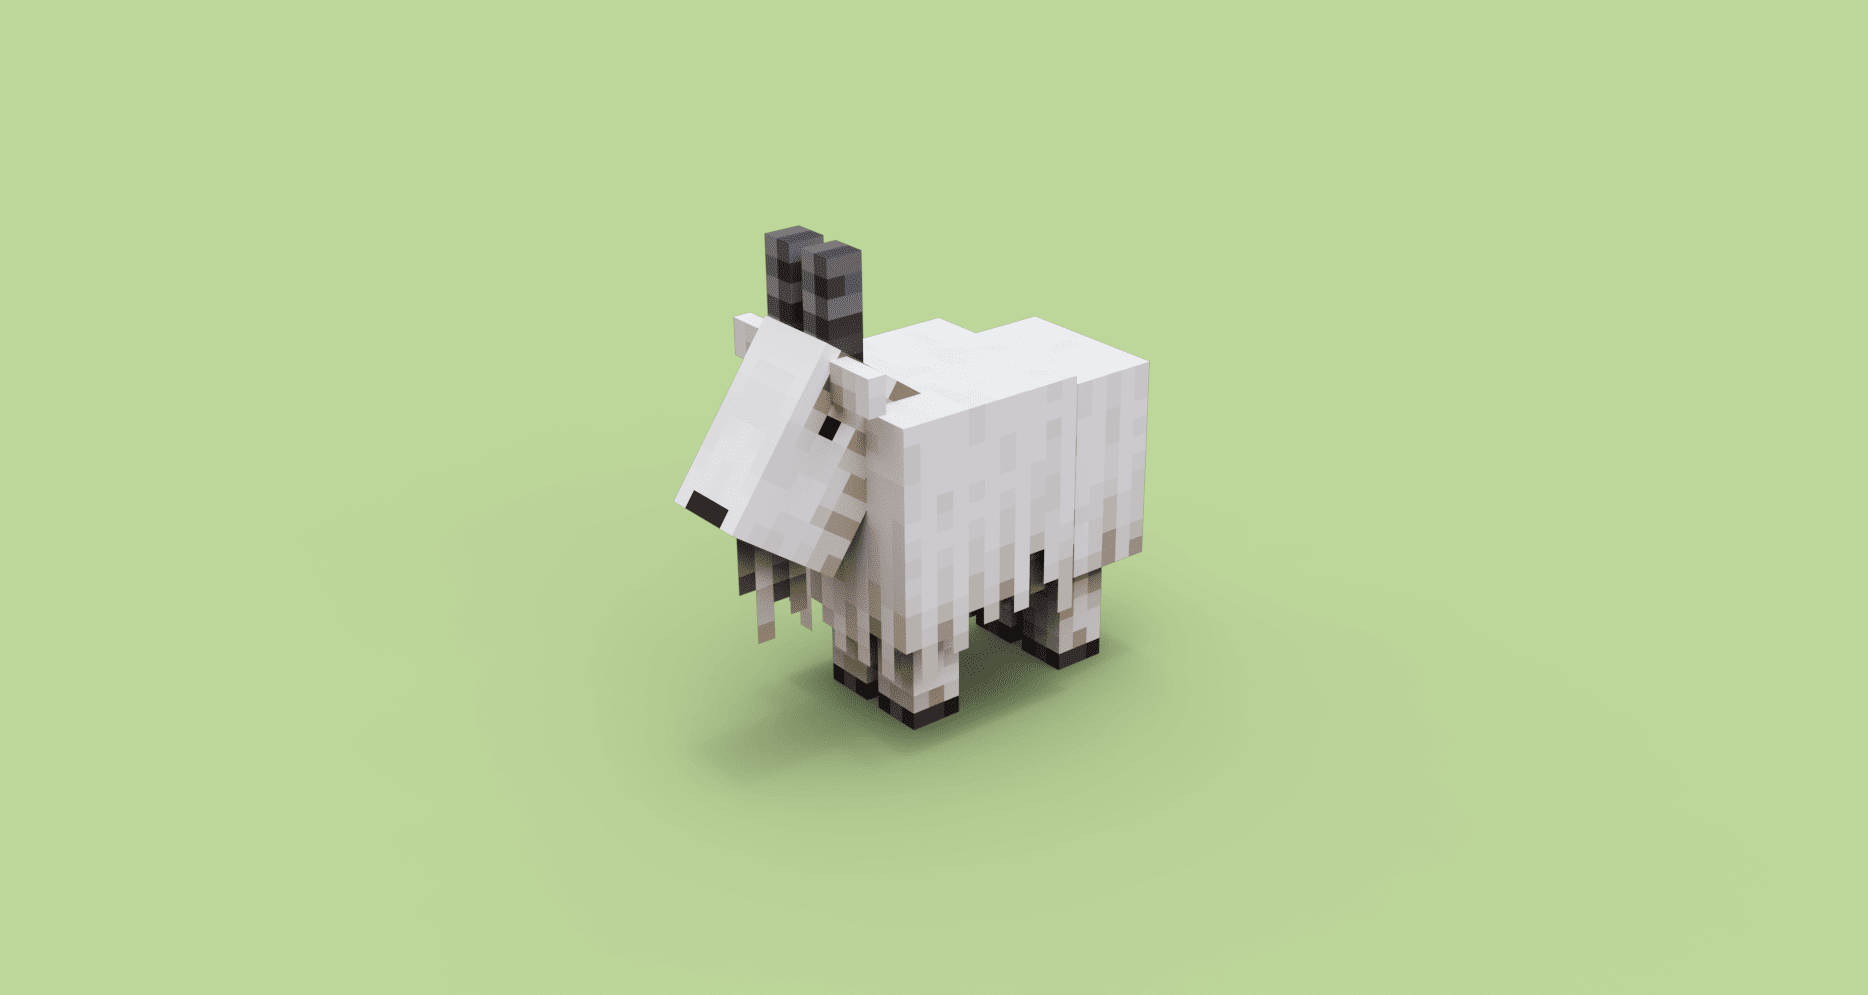 Mit Blockbench entworfene Minecraft-Schafe.